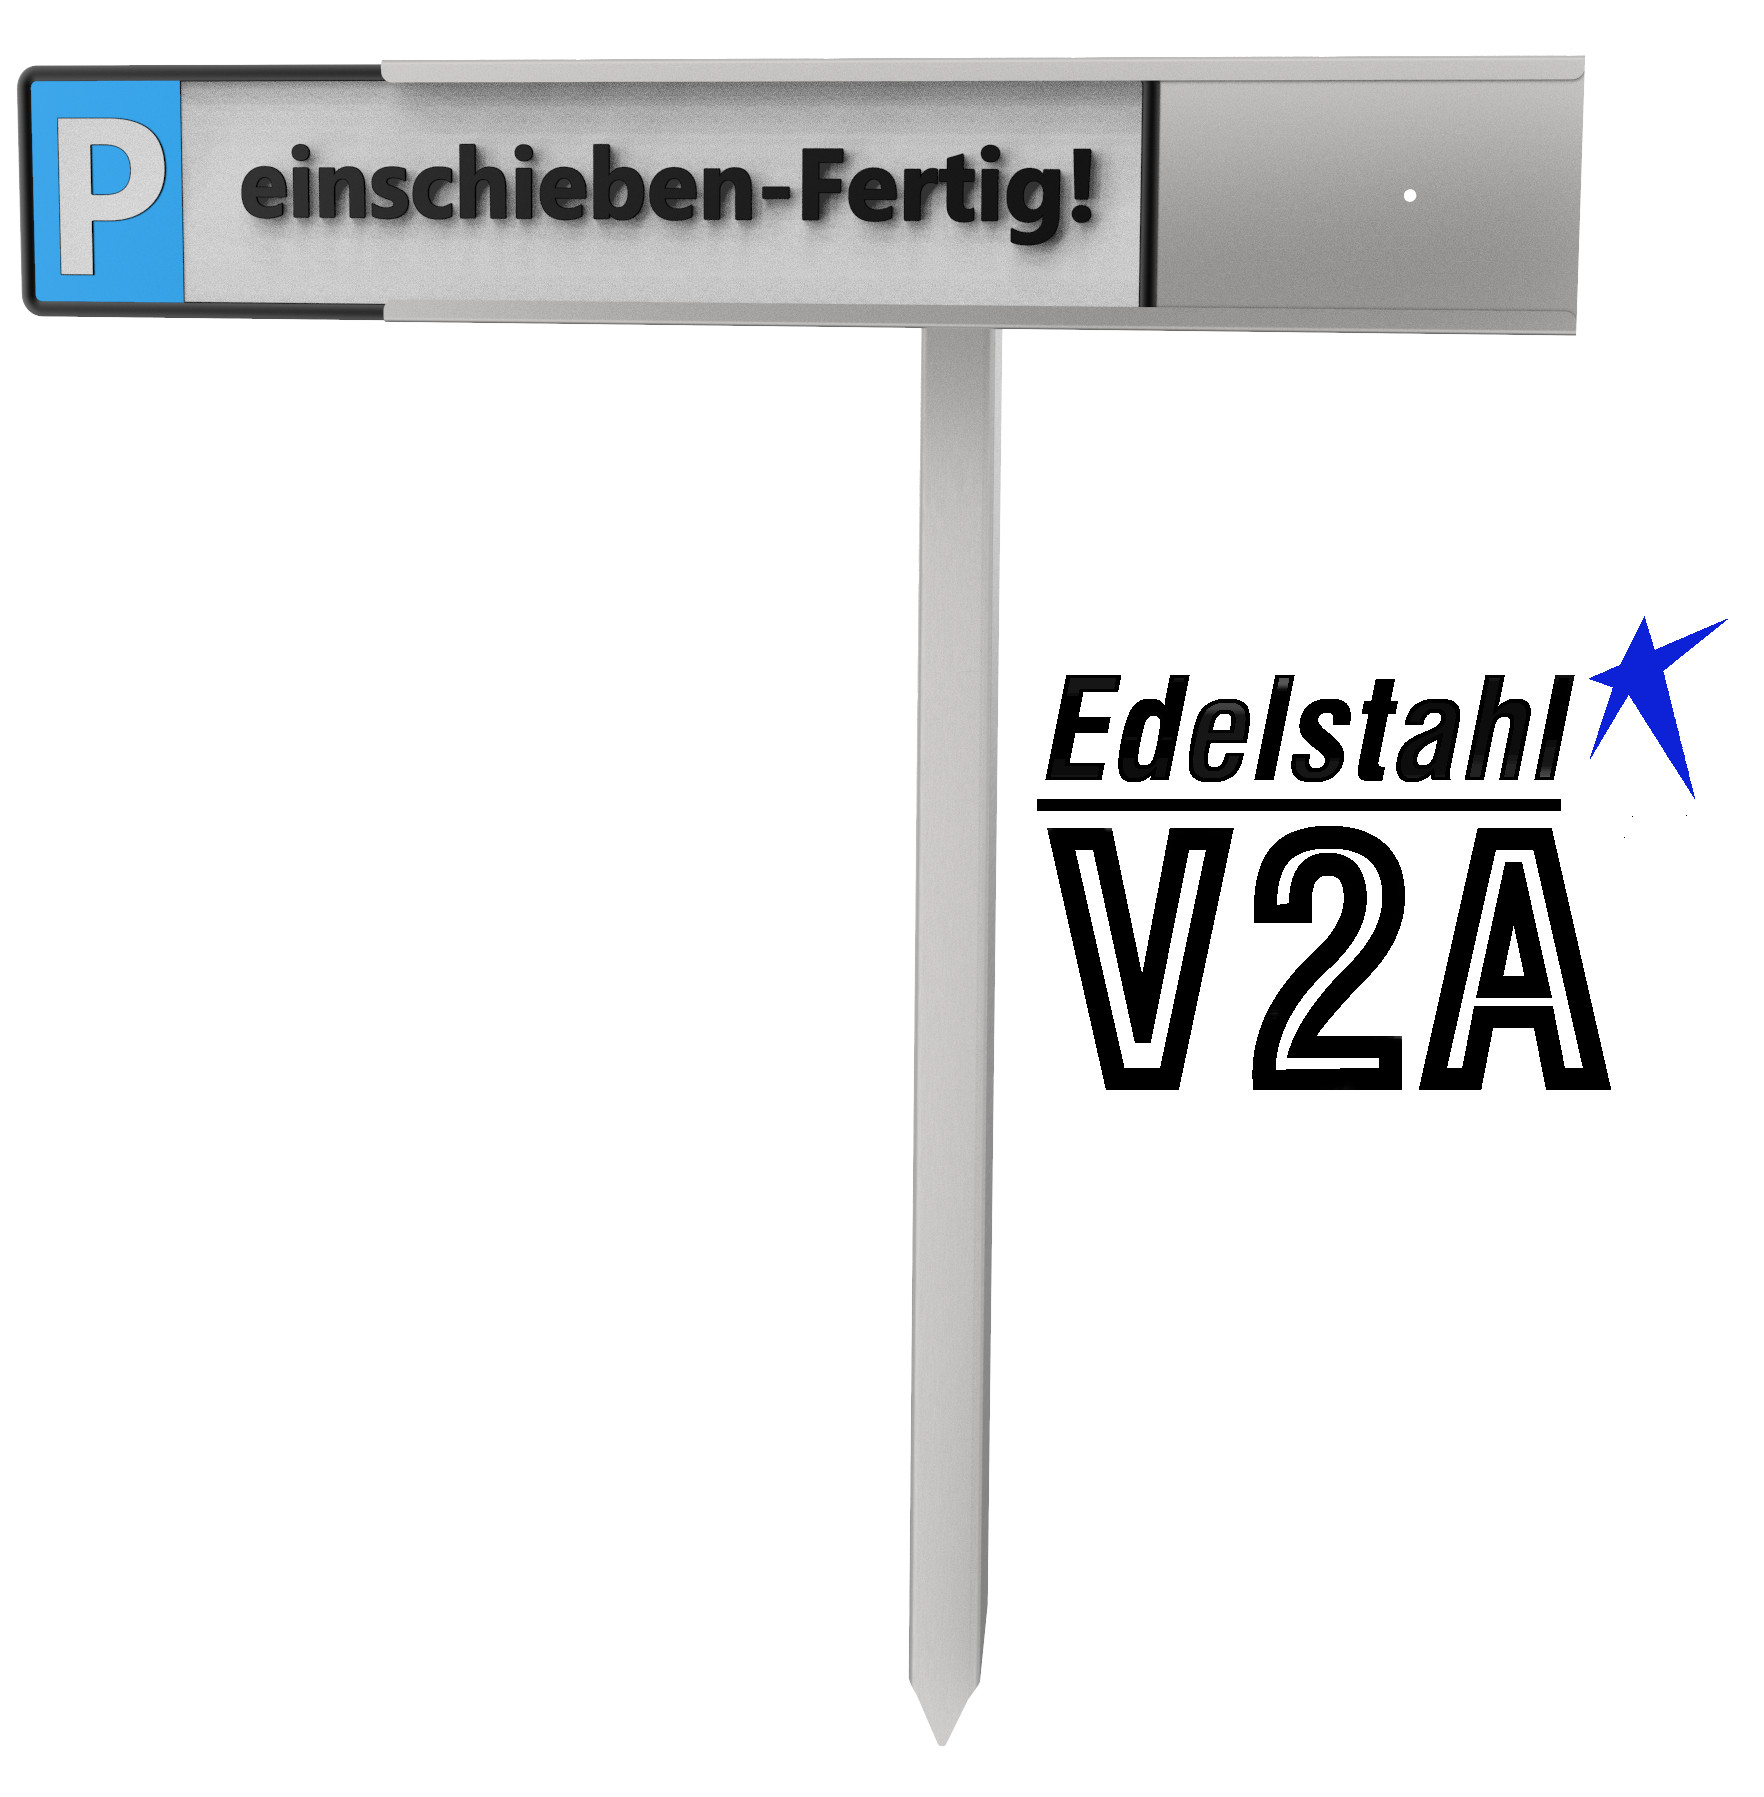 Parkplatz: Parkplatzschild RESERVIERT Kennzeichen zum Stecken